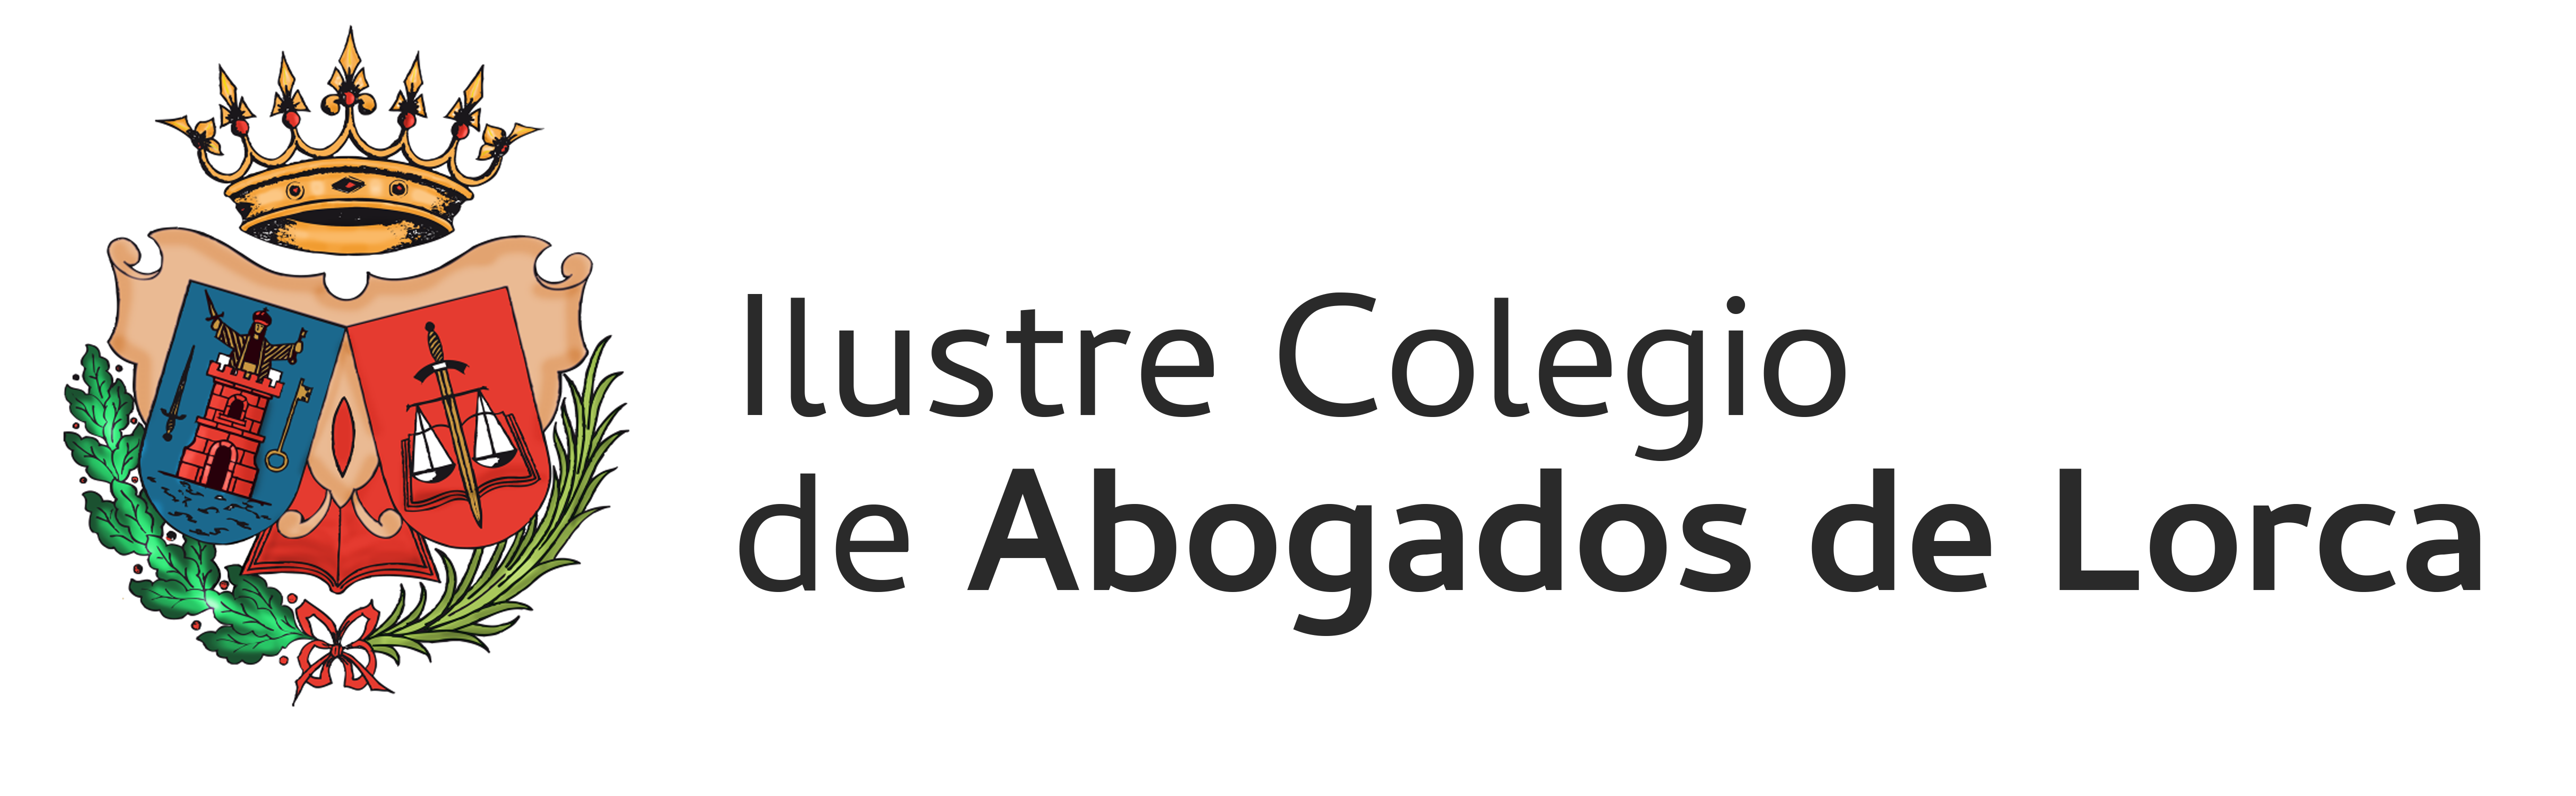 Ilustre Colegio de Abogados de Lorca